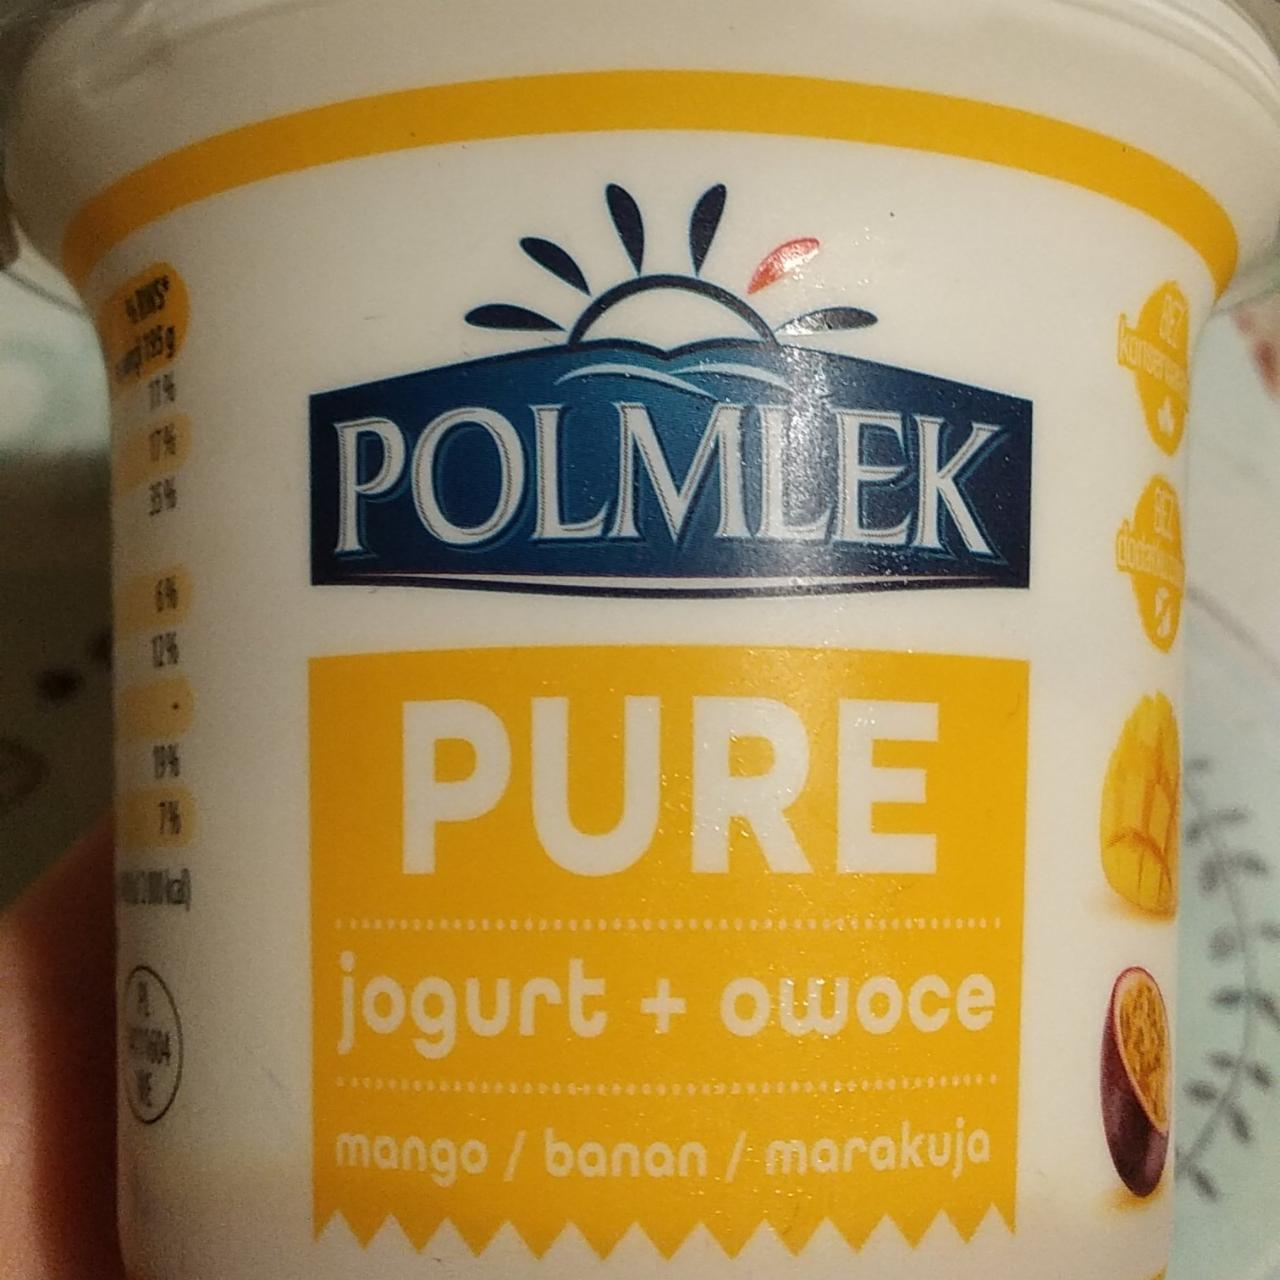 Zdjęcia - Pure jogurt + owoce mango banan marakuja Polmlek